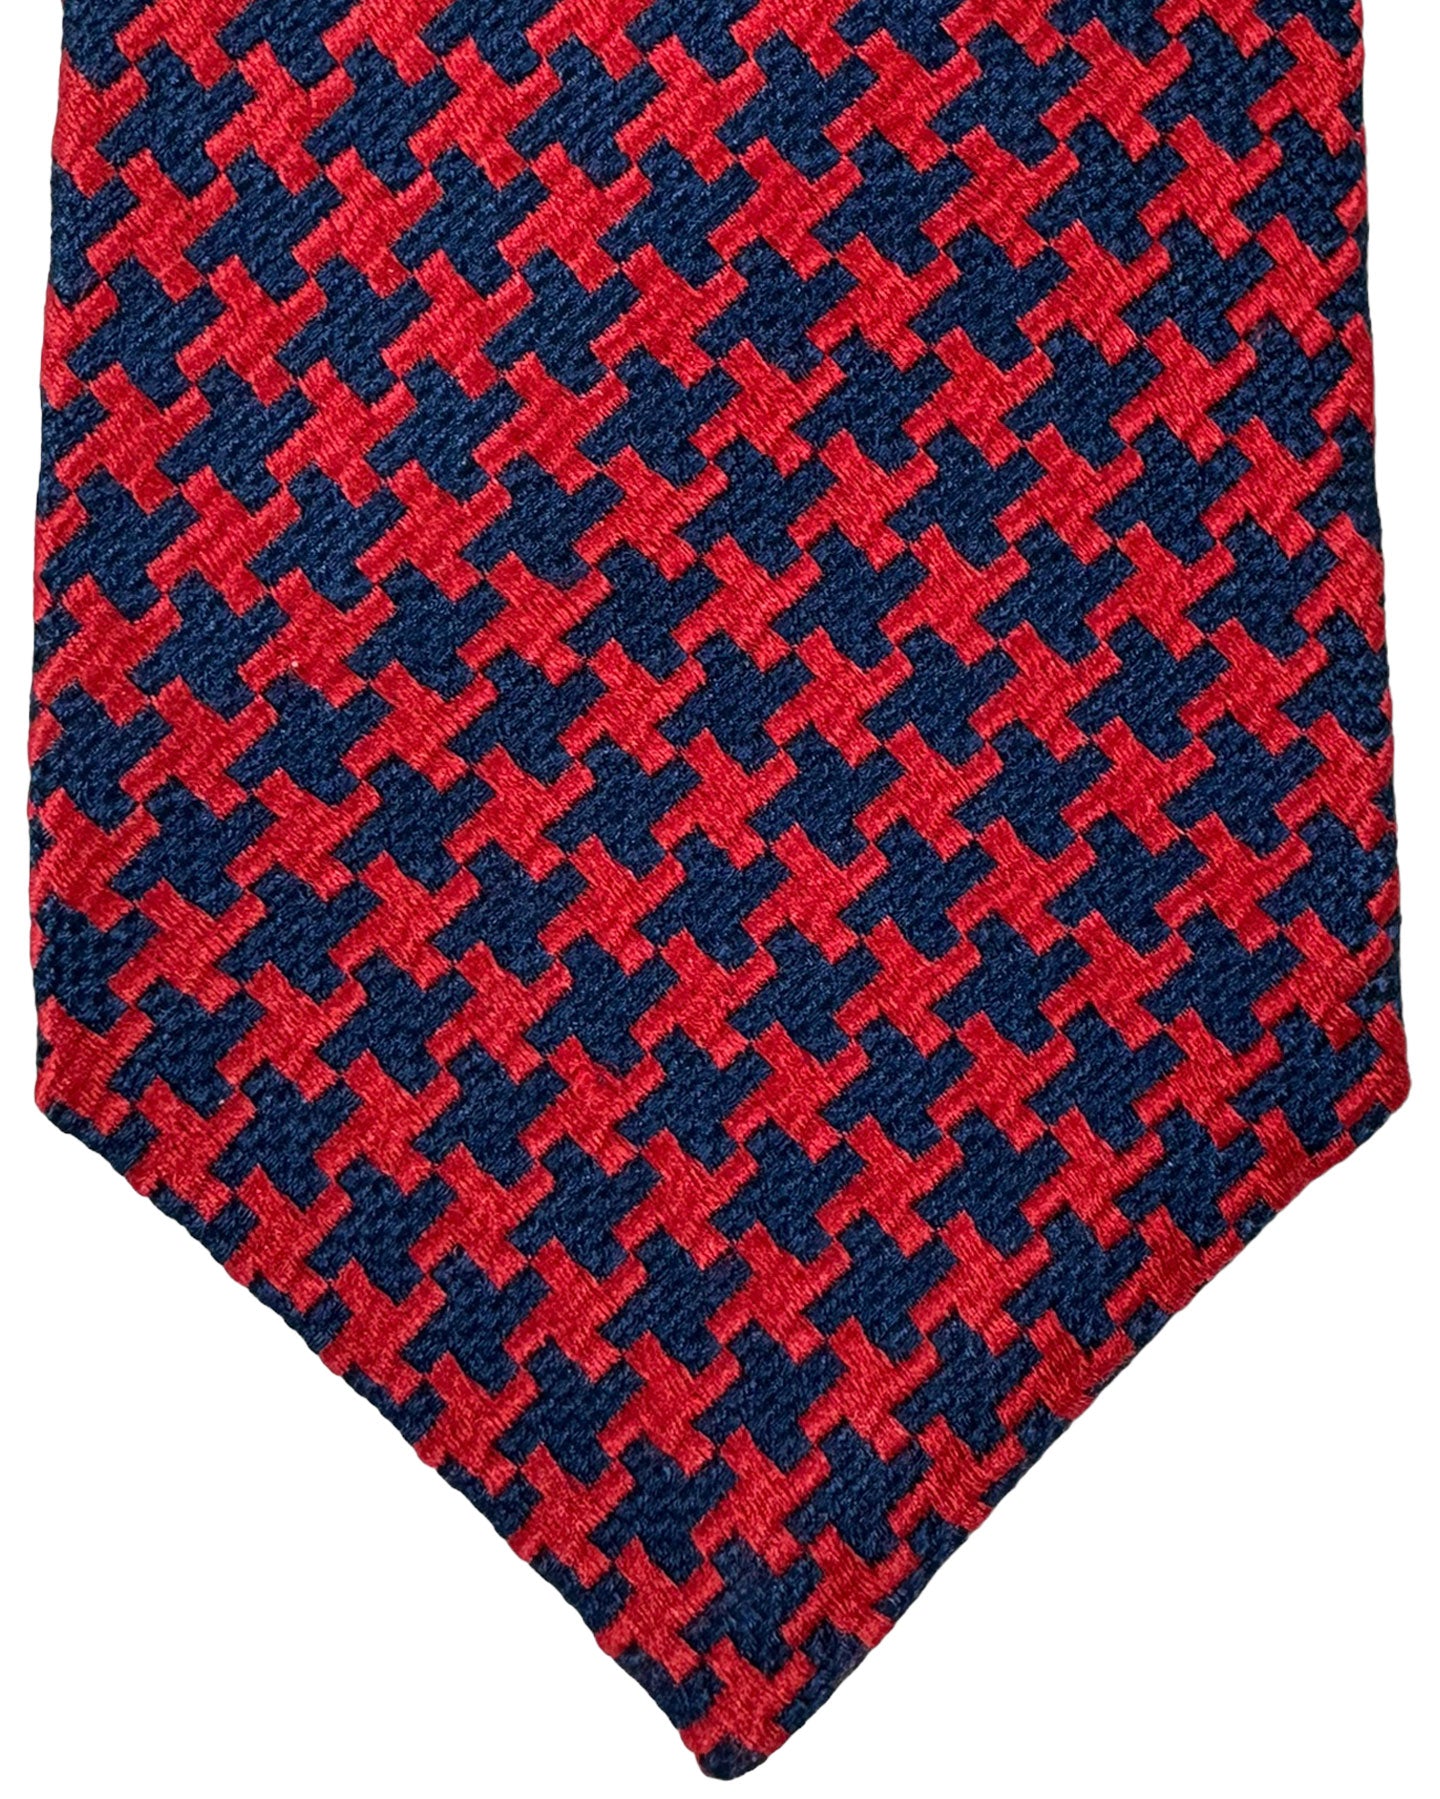 Kiton Silk Tie Navy Red Houndstooth - Sevenfold Necktie